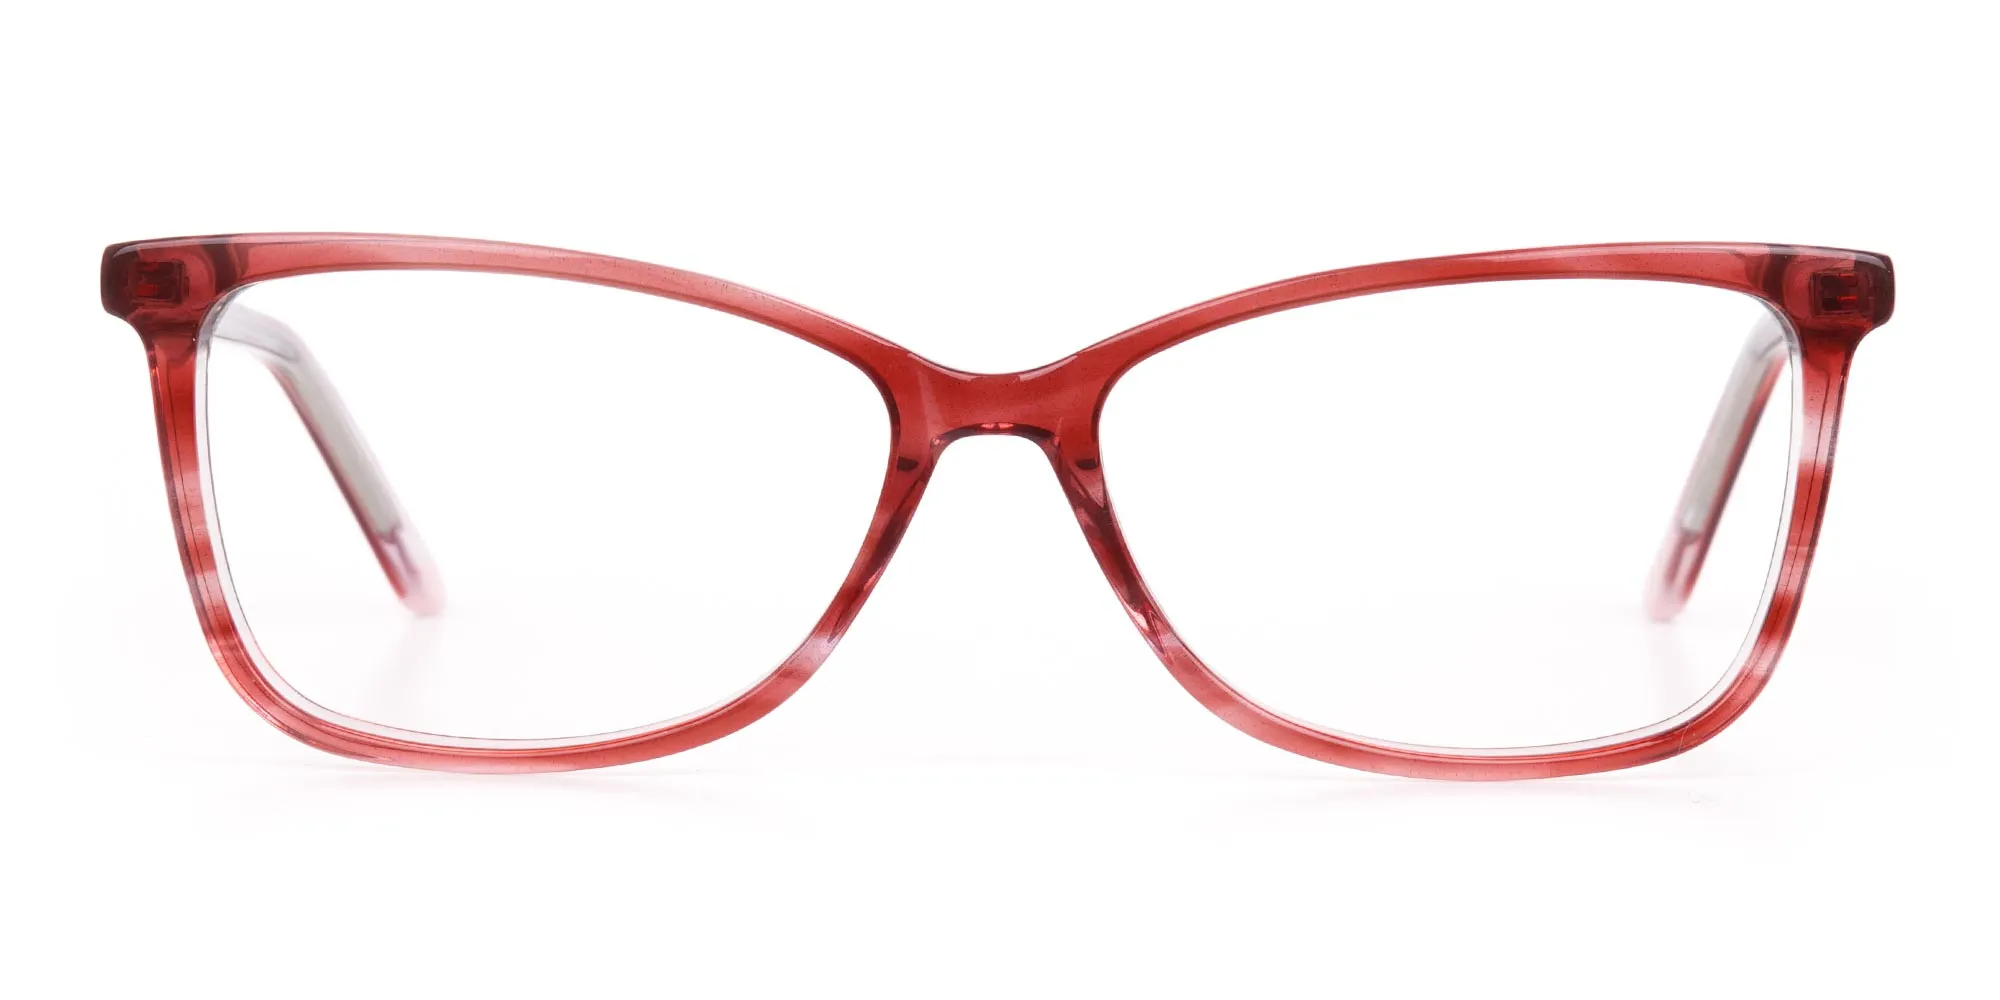 Translucent Rose Red Cat Eye Glasses Women-2